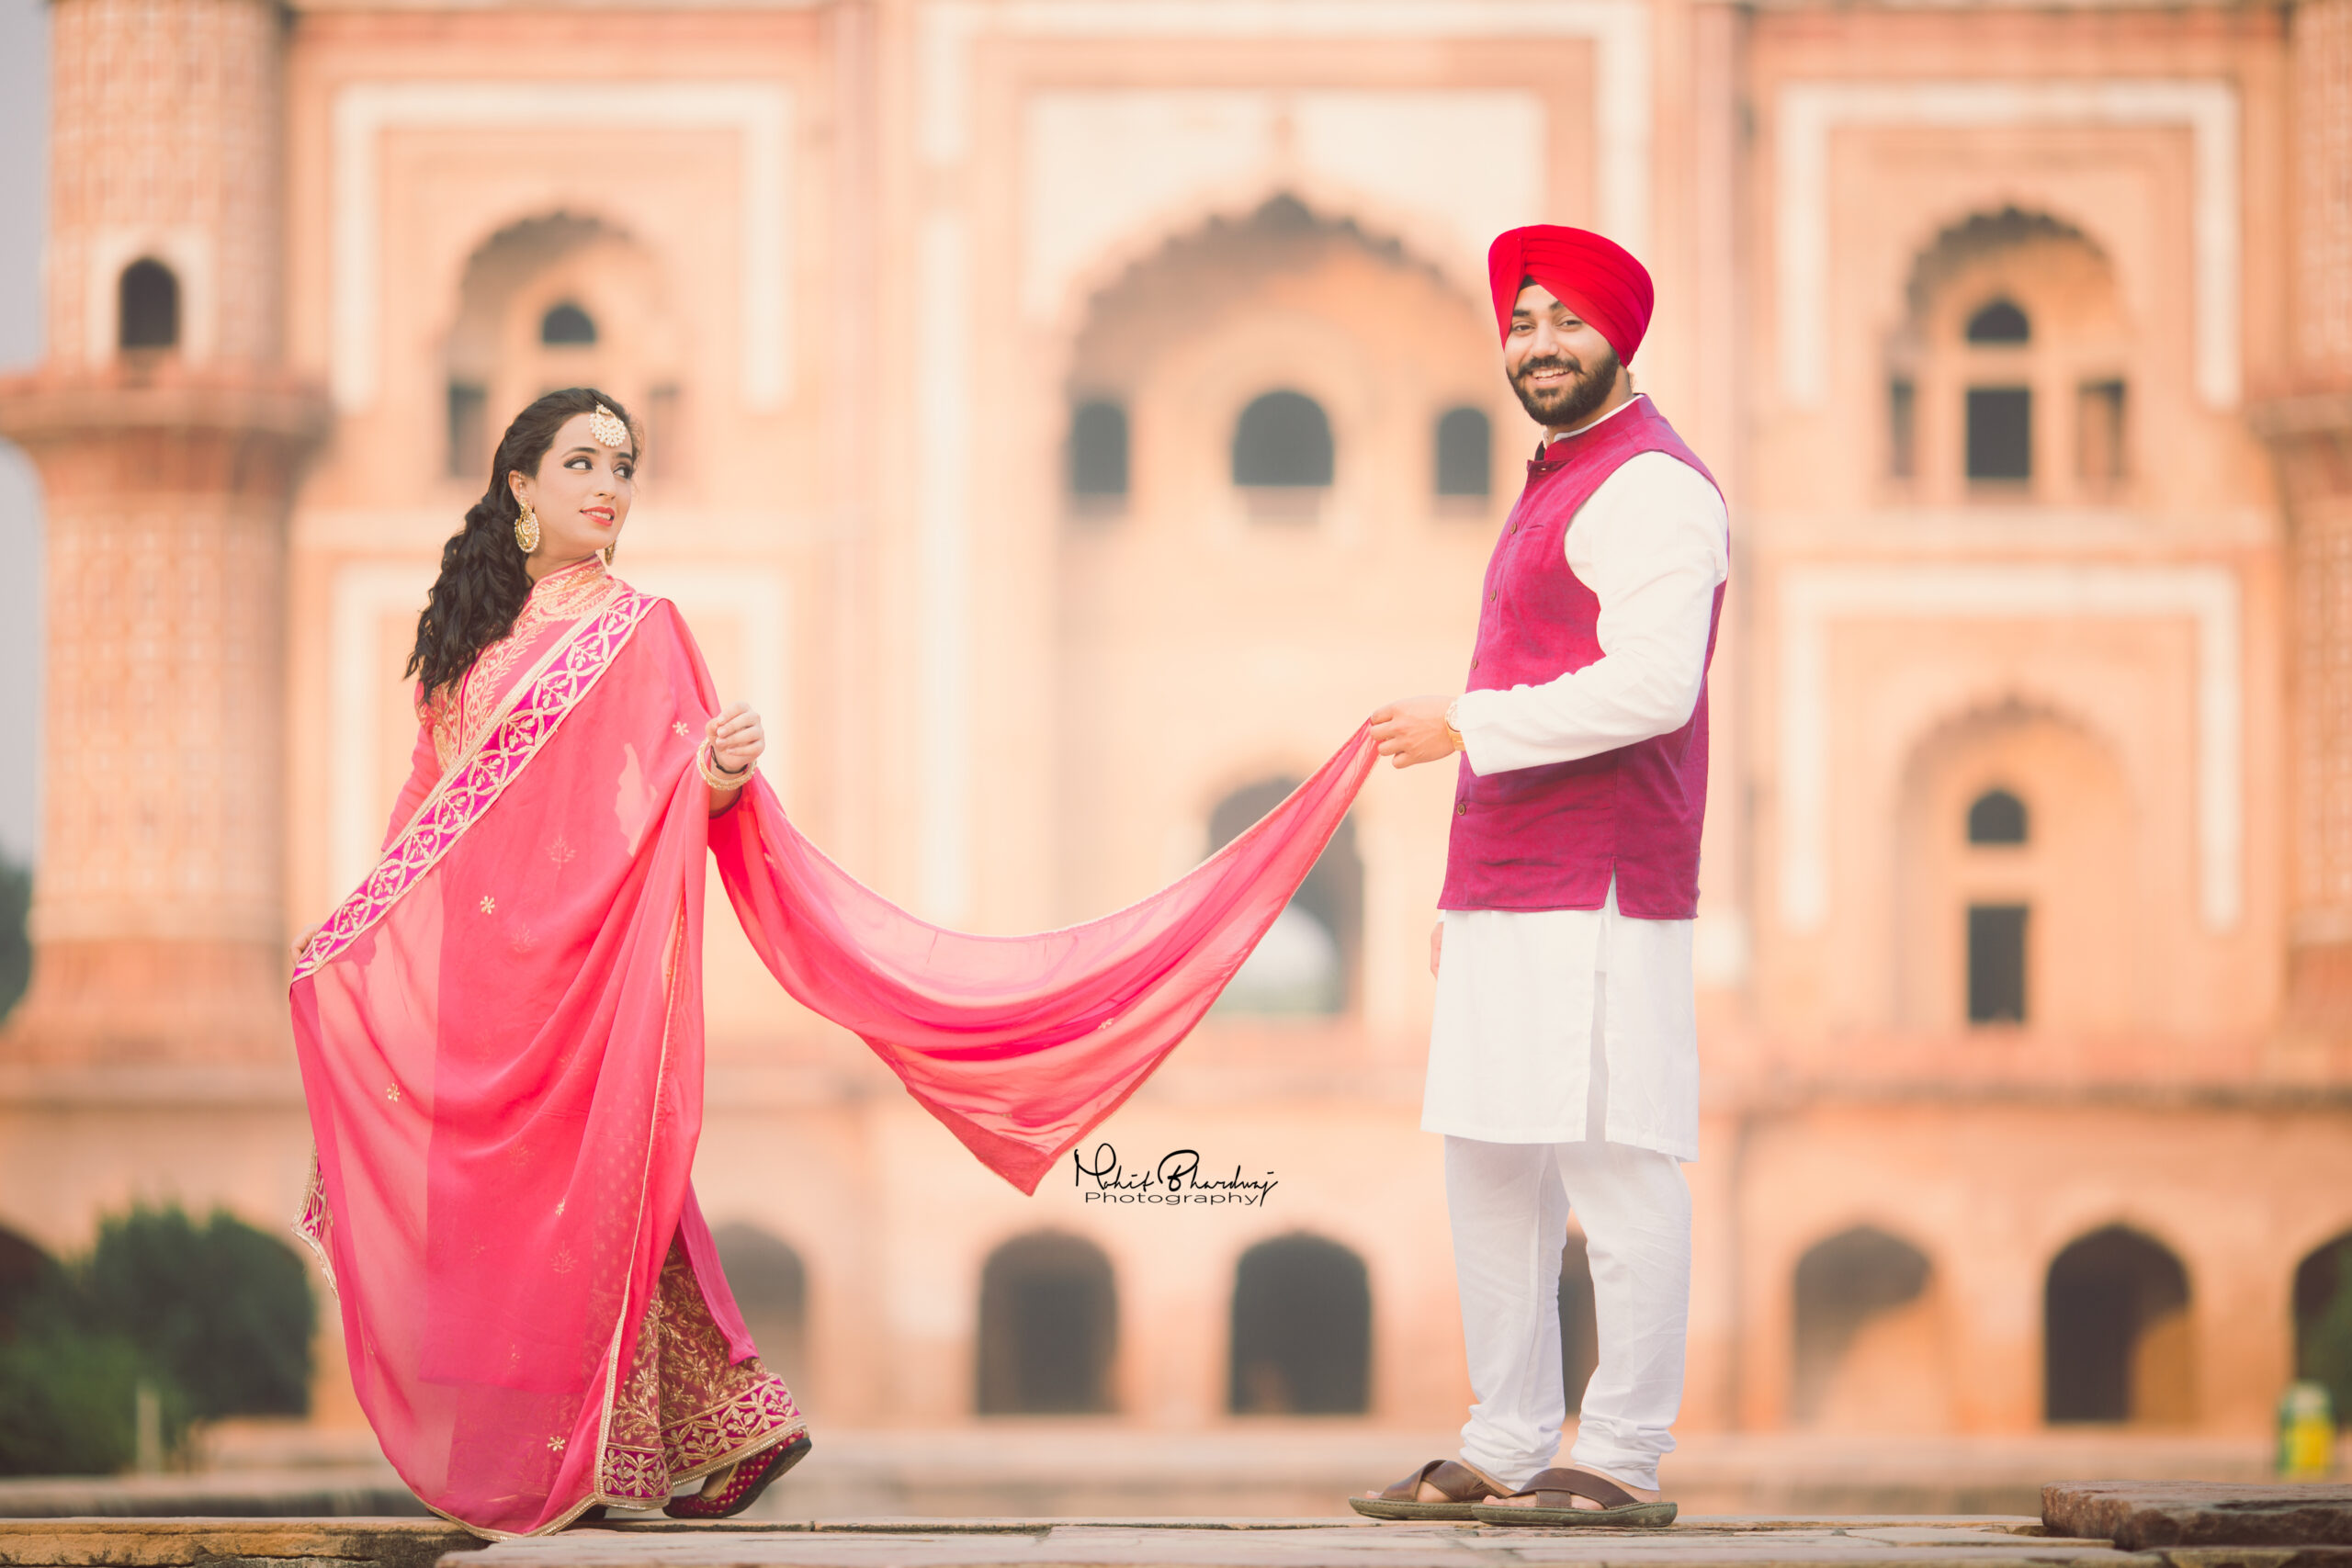 Awesome Punjabi couple pics | Indian wedding couple photography, Indian  wedding photography poses, Punjabi wedding couple